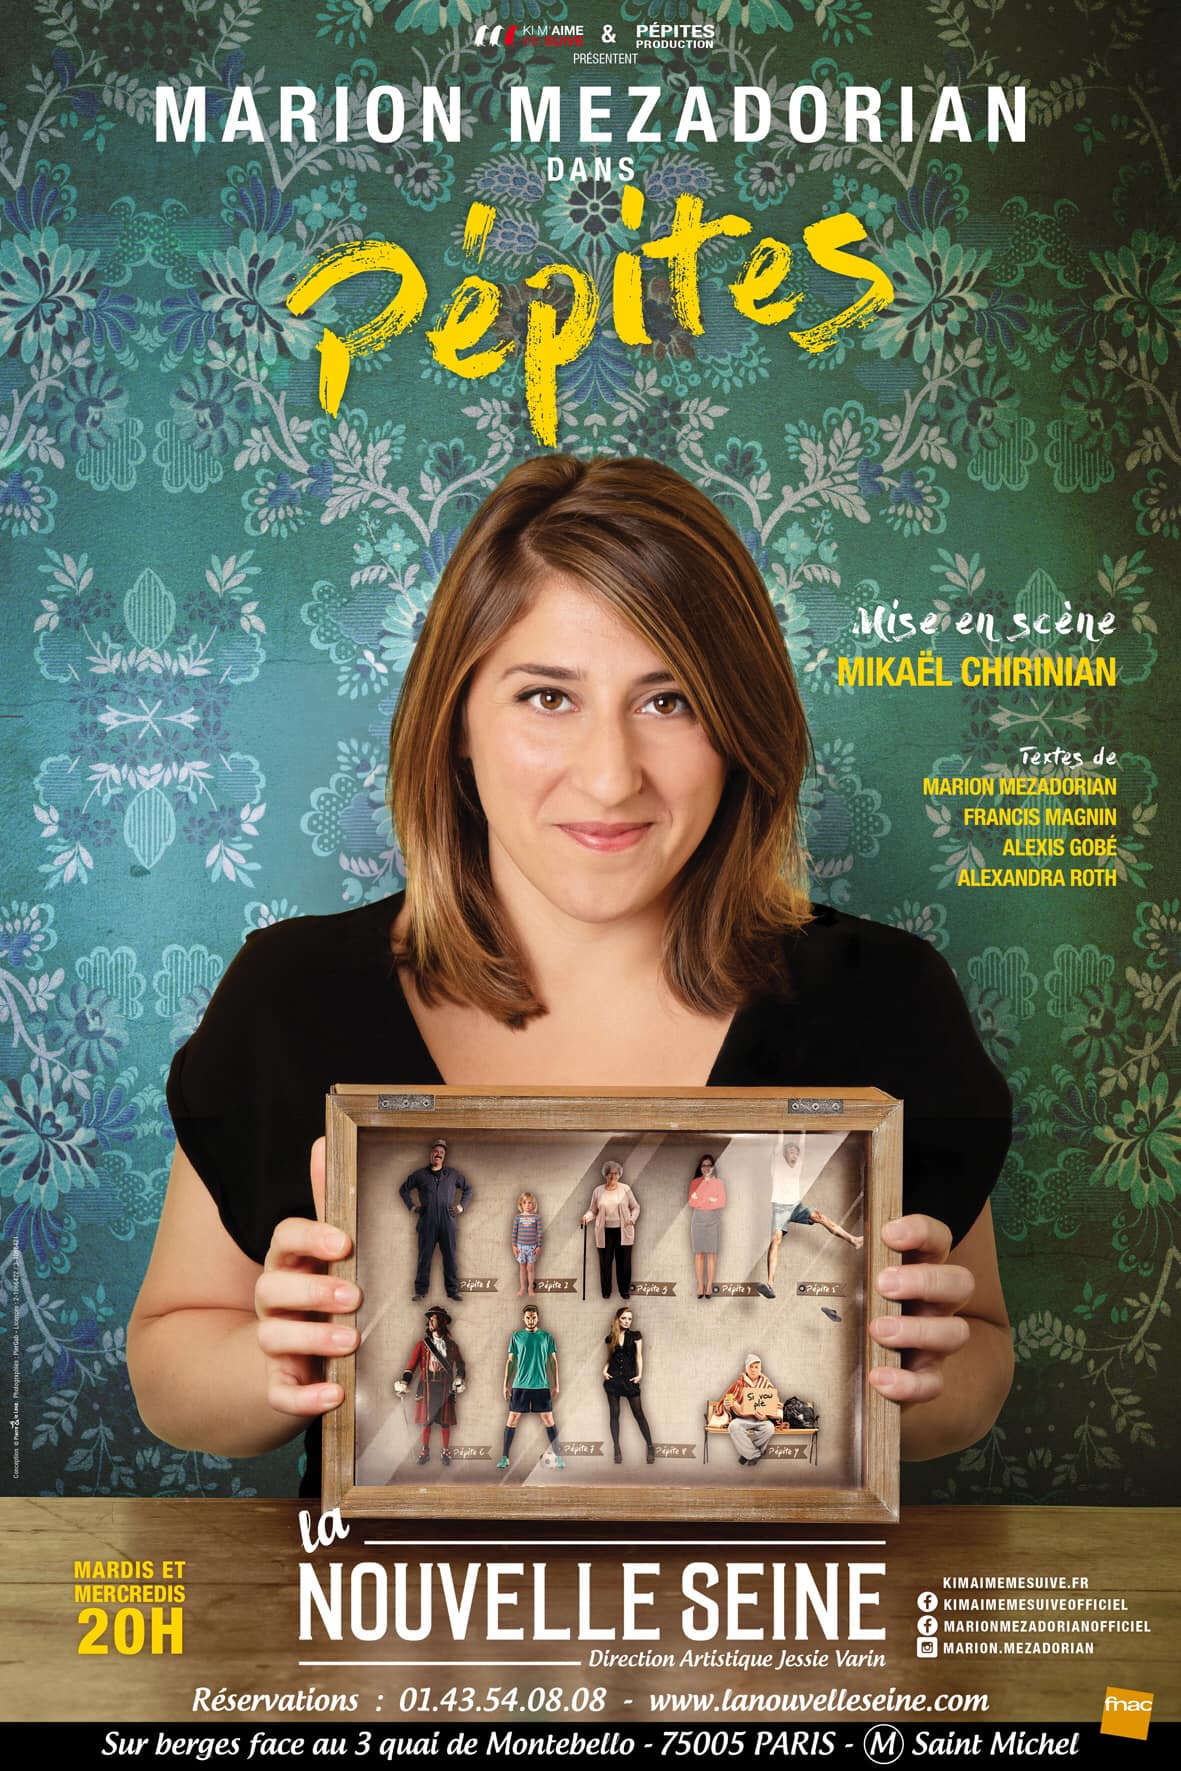 Pépites : la nouvelle affiche du spectacle de Marion Mezadorian à la Nouvelle Seine